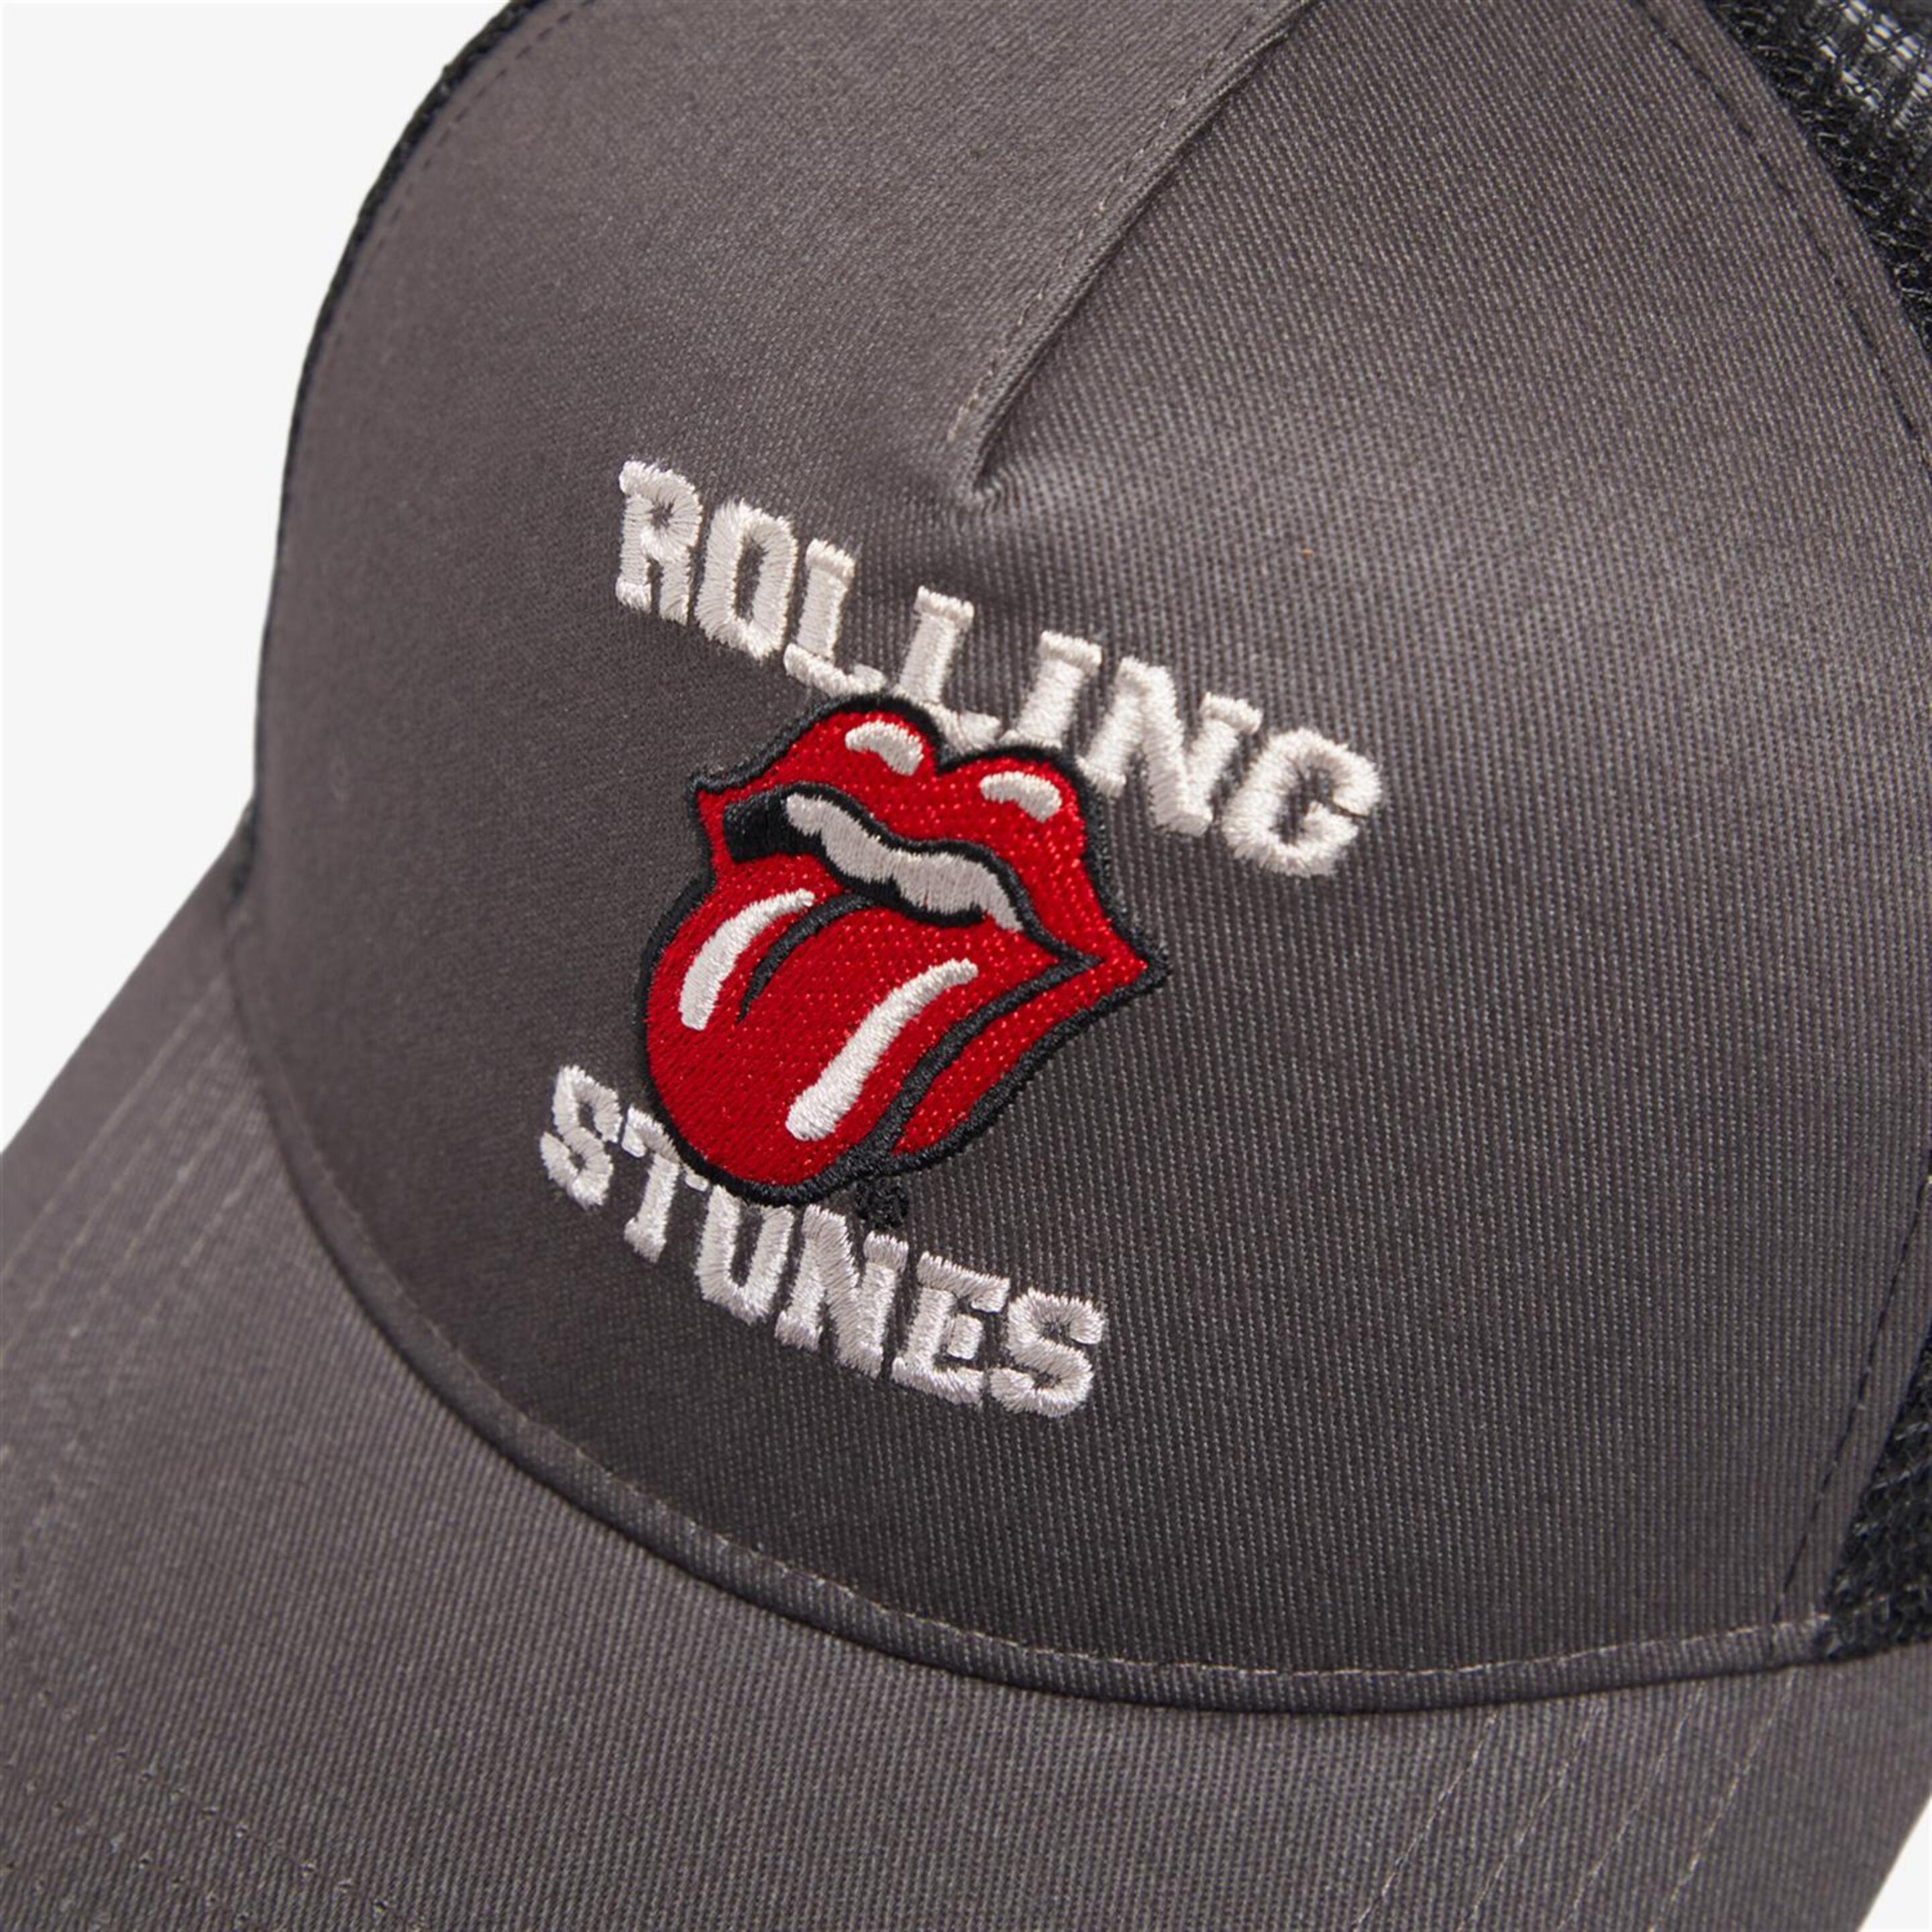 Boné Rolling Stones